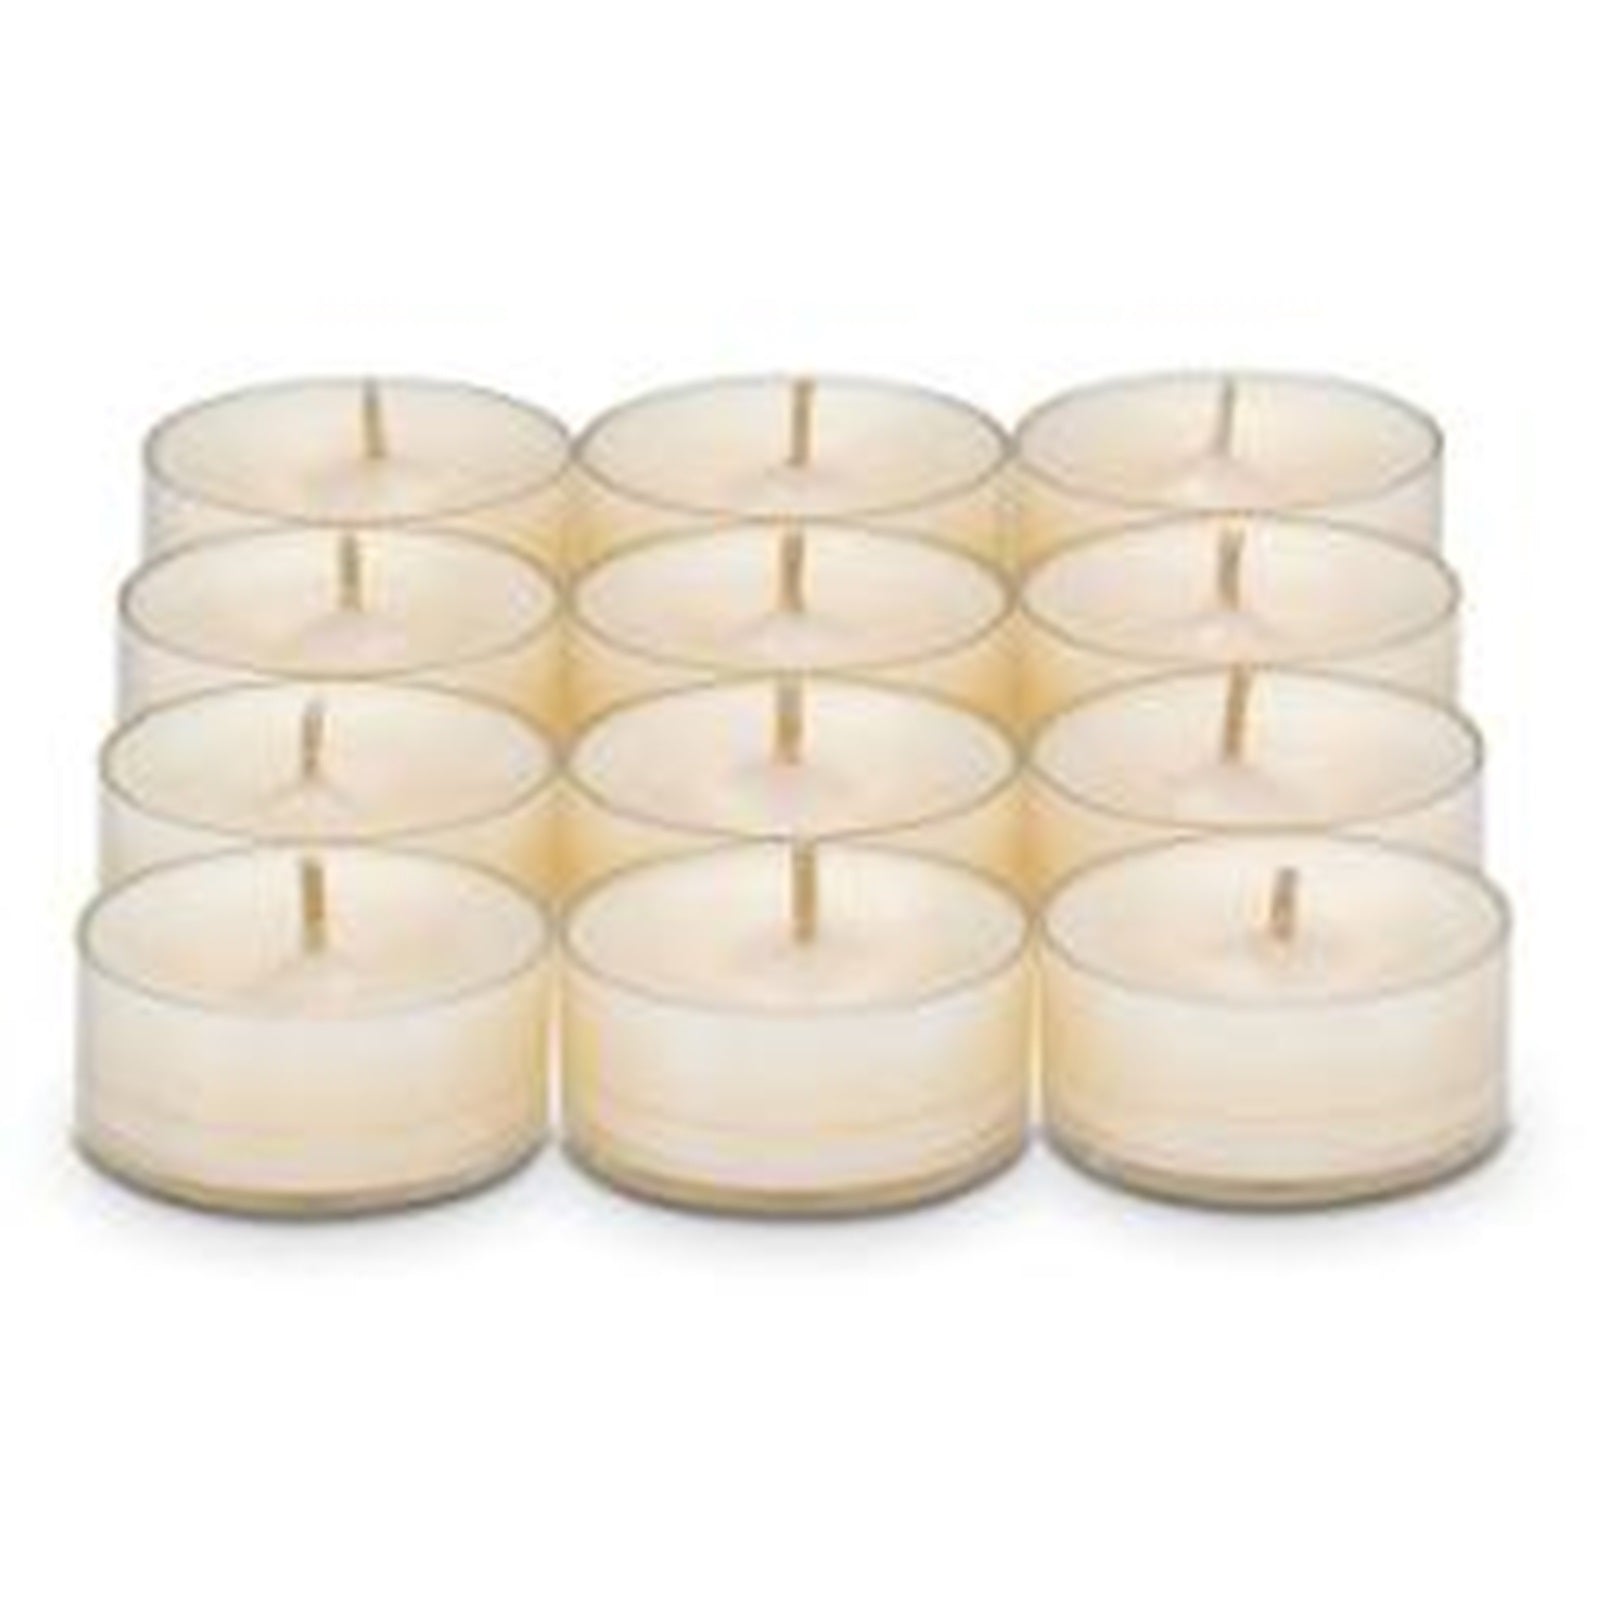 PartyLite Tealight Candles - 1 Box - 1 Dozen Tealights - 12 FRENCH VANILLA WAX